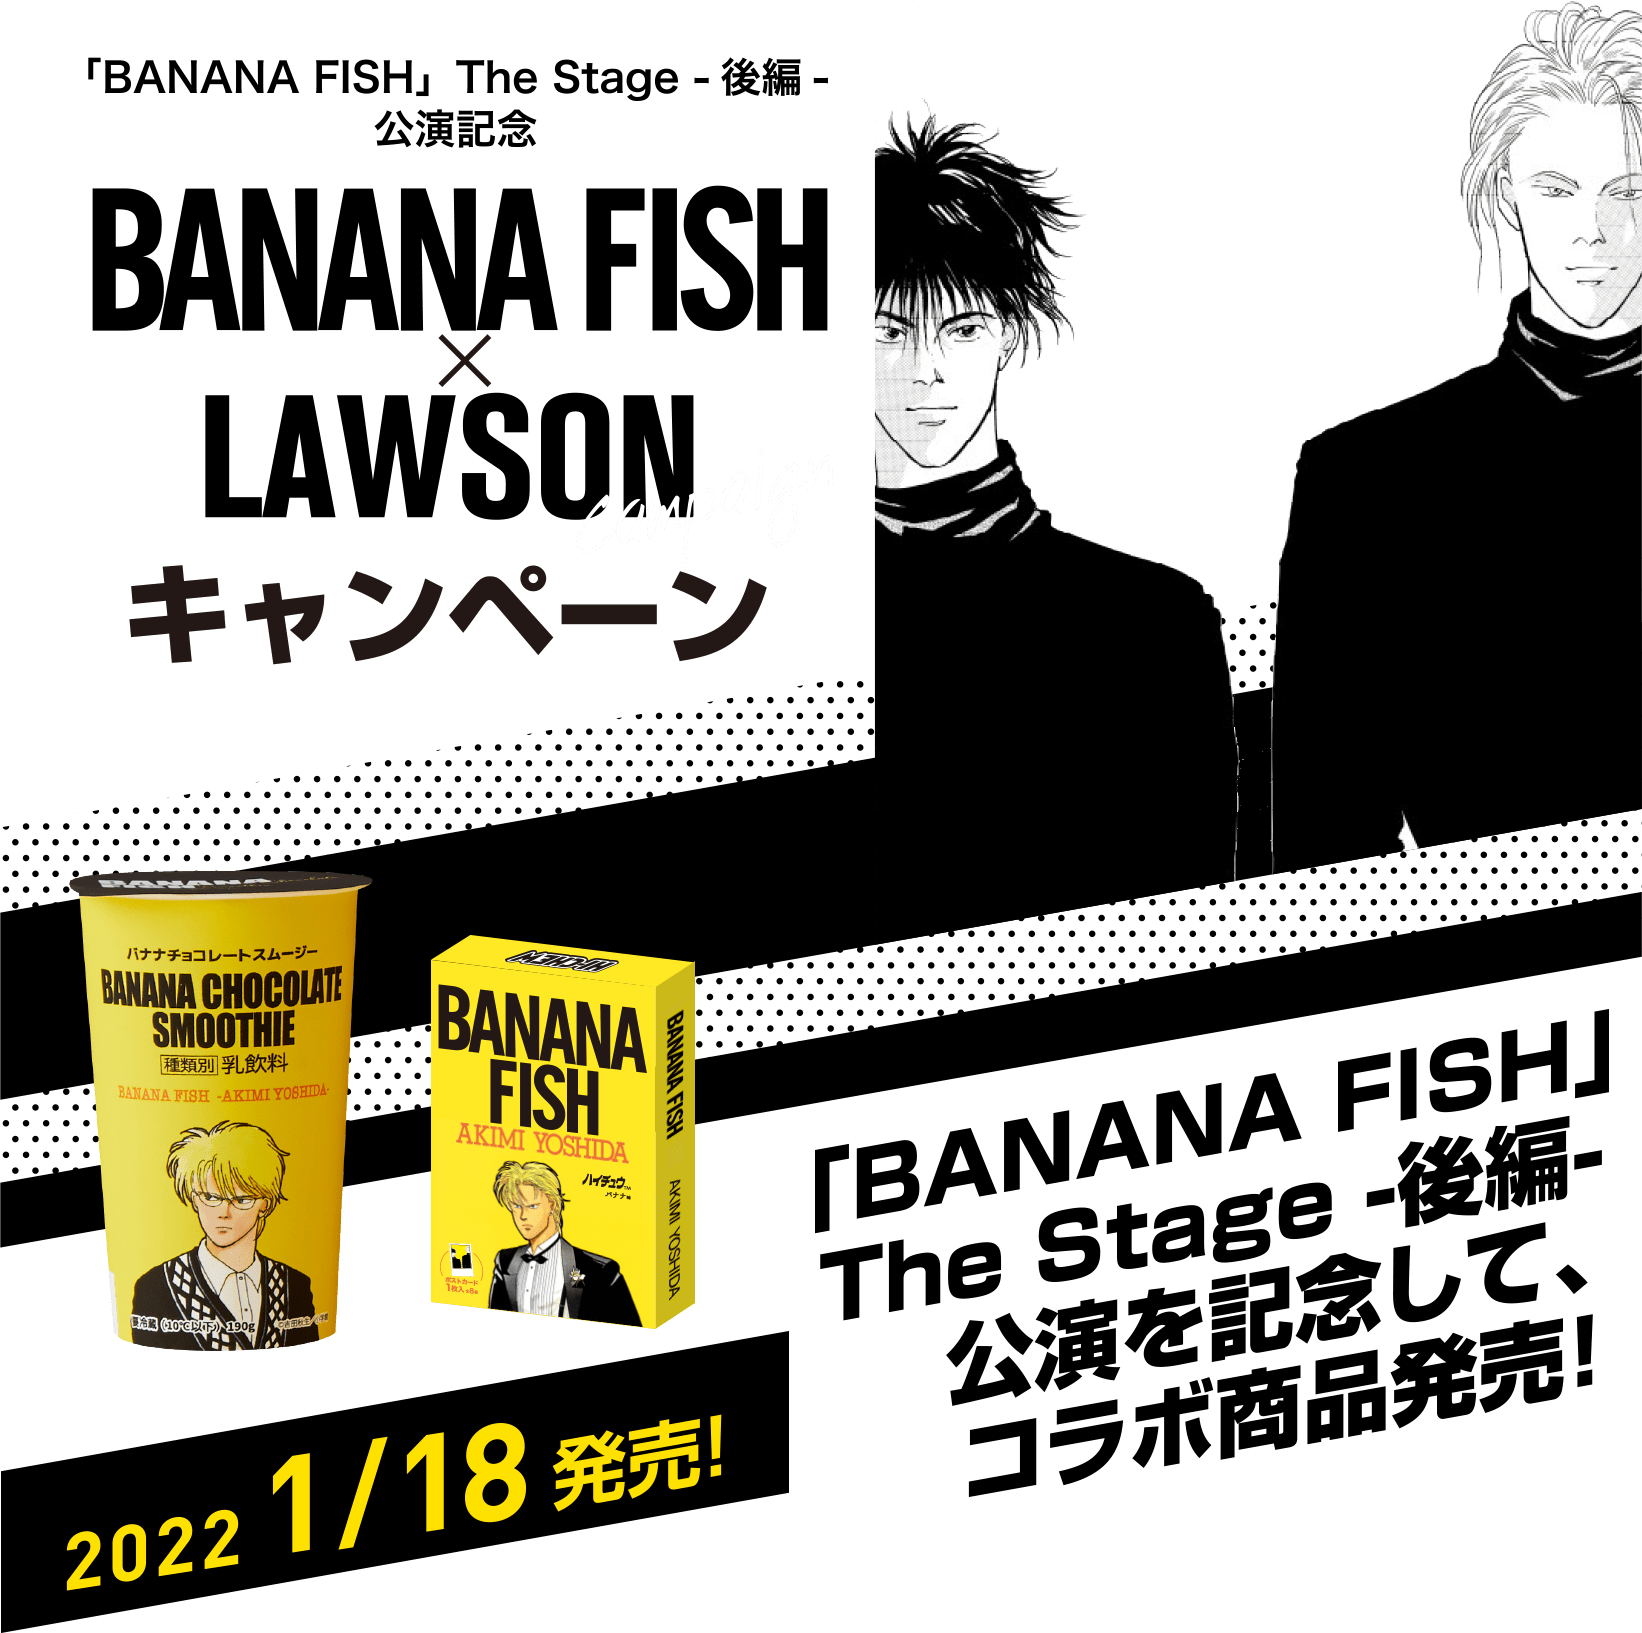 BANANAFISH×LAWSONキャンペーン 「BANANA FISH」The Stage -後編- 公演を記念して,コラボ商品発売！